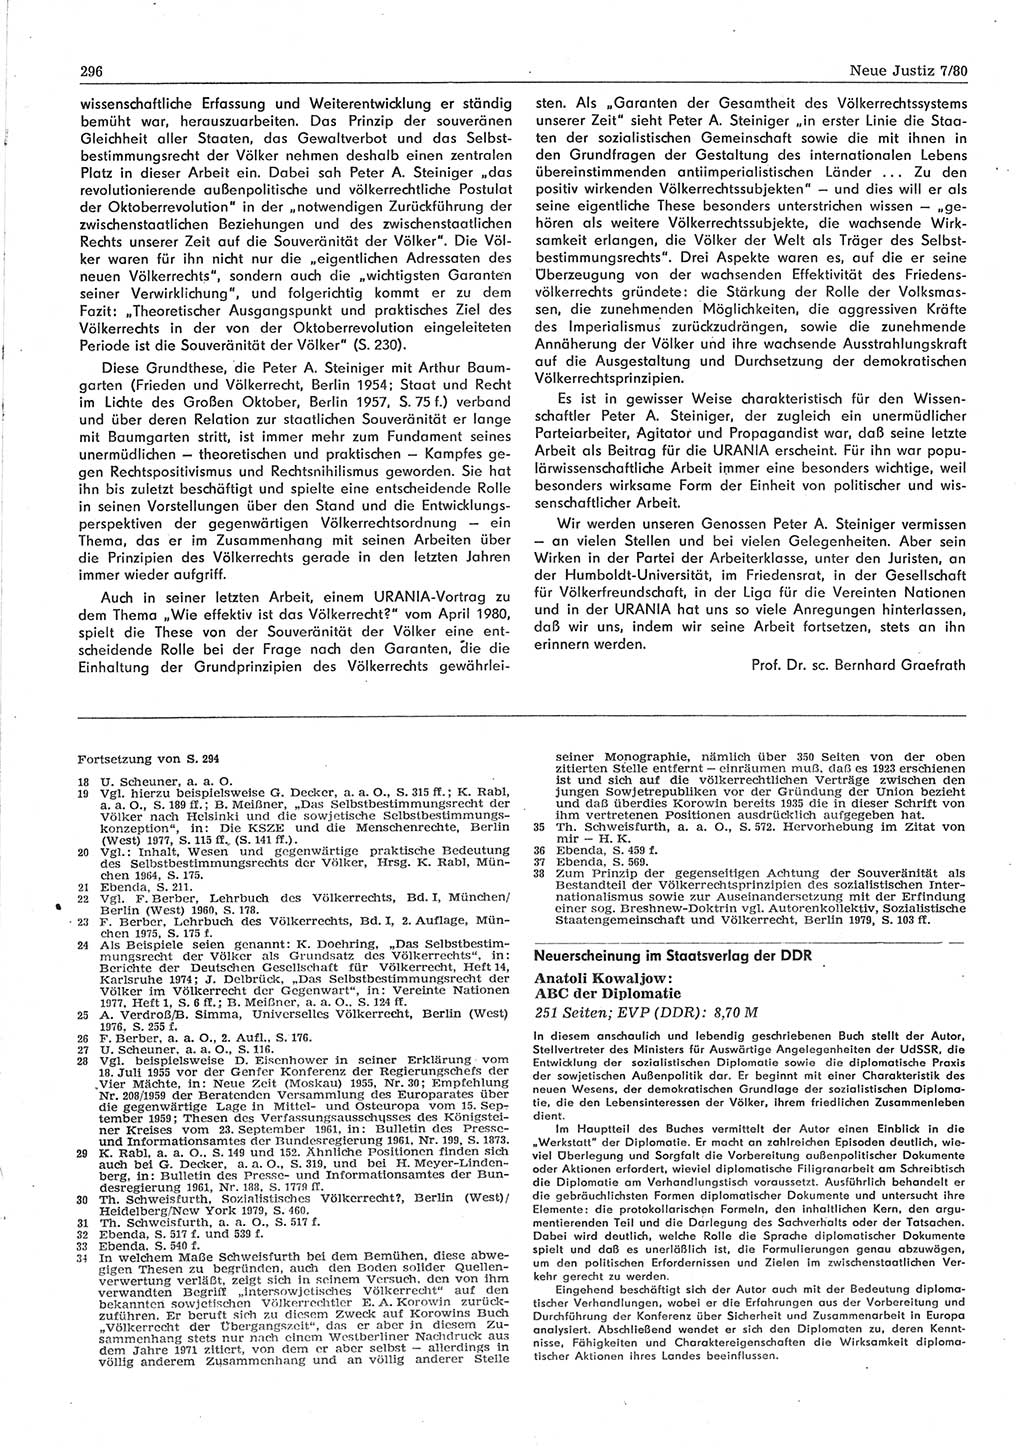 Neue Justiz (NJ), Zeitschrift für sozialistisches Recht und Gesetzlichkeit [Deutsche Demokratische Republik (DDR)], 34. Jahrgang 1980, Seite 296 (NJ DDR 1980, S. 296)